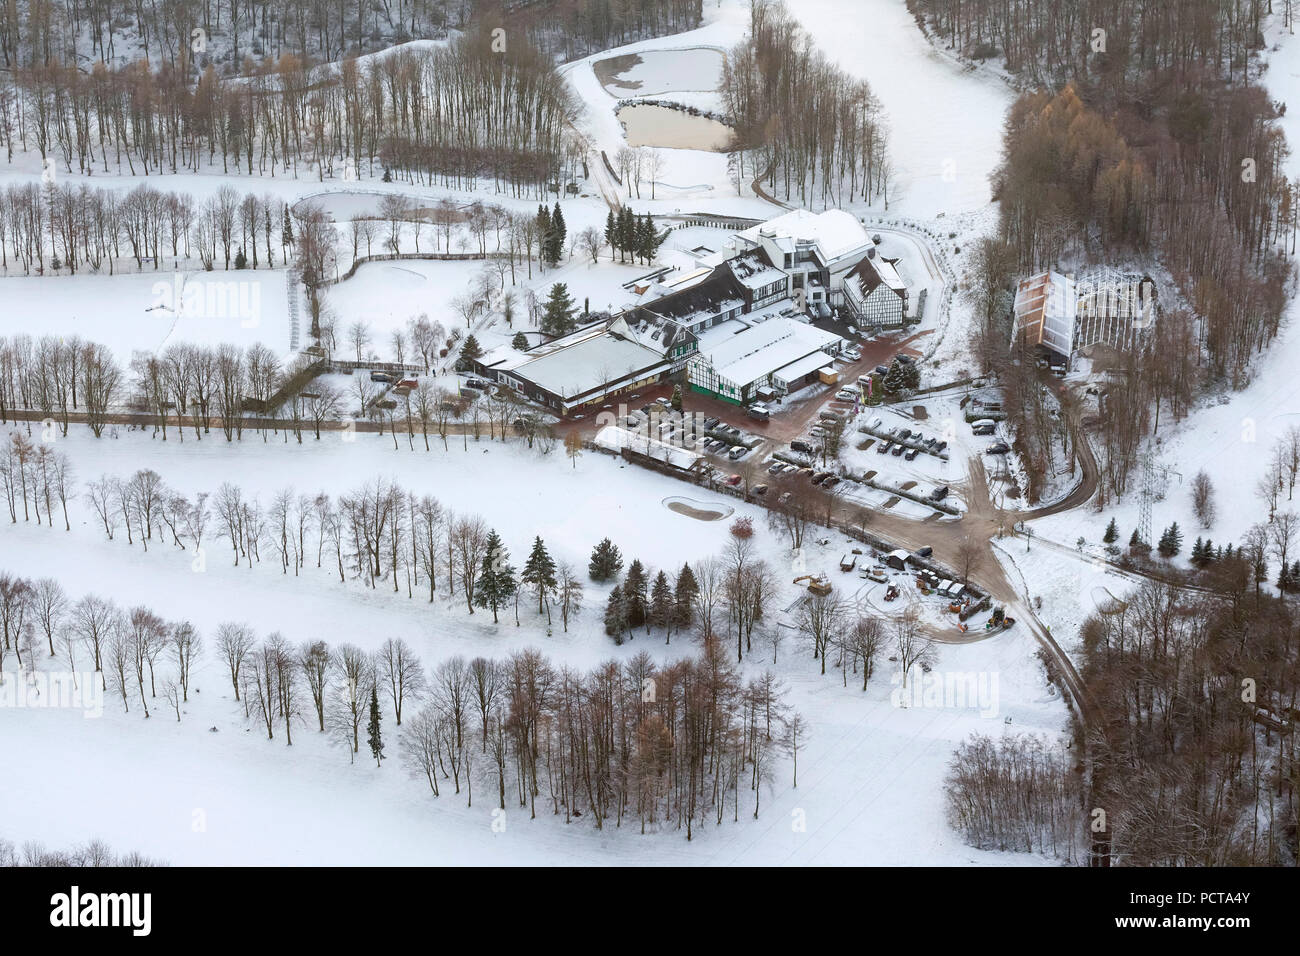 Foto aerea, Vesper Golf Hotel, coperto di neve e campo da golf, Sprockhoevel, la zona della Ruhr, Renania settentrionale-Vestfalia, Germania, Europa Foto Stock